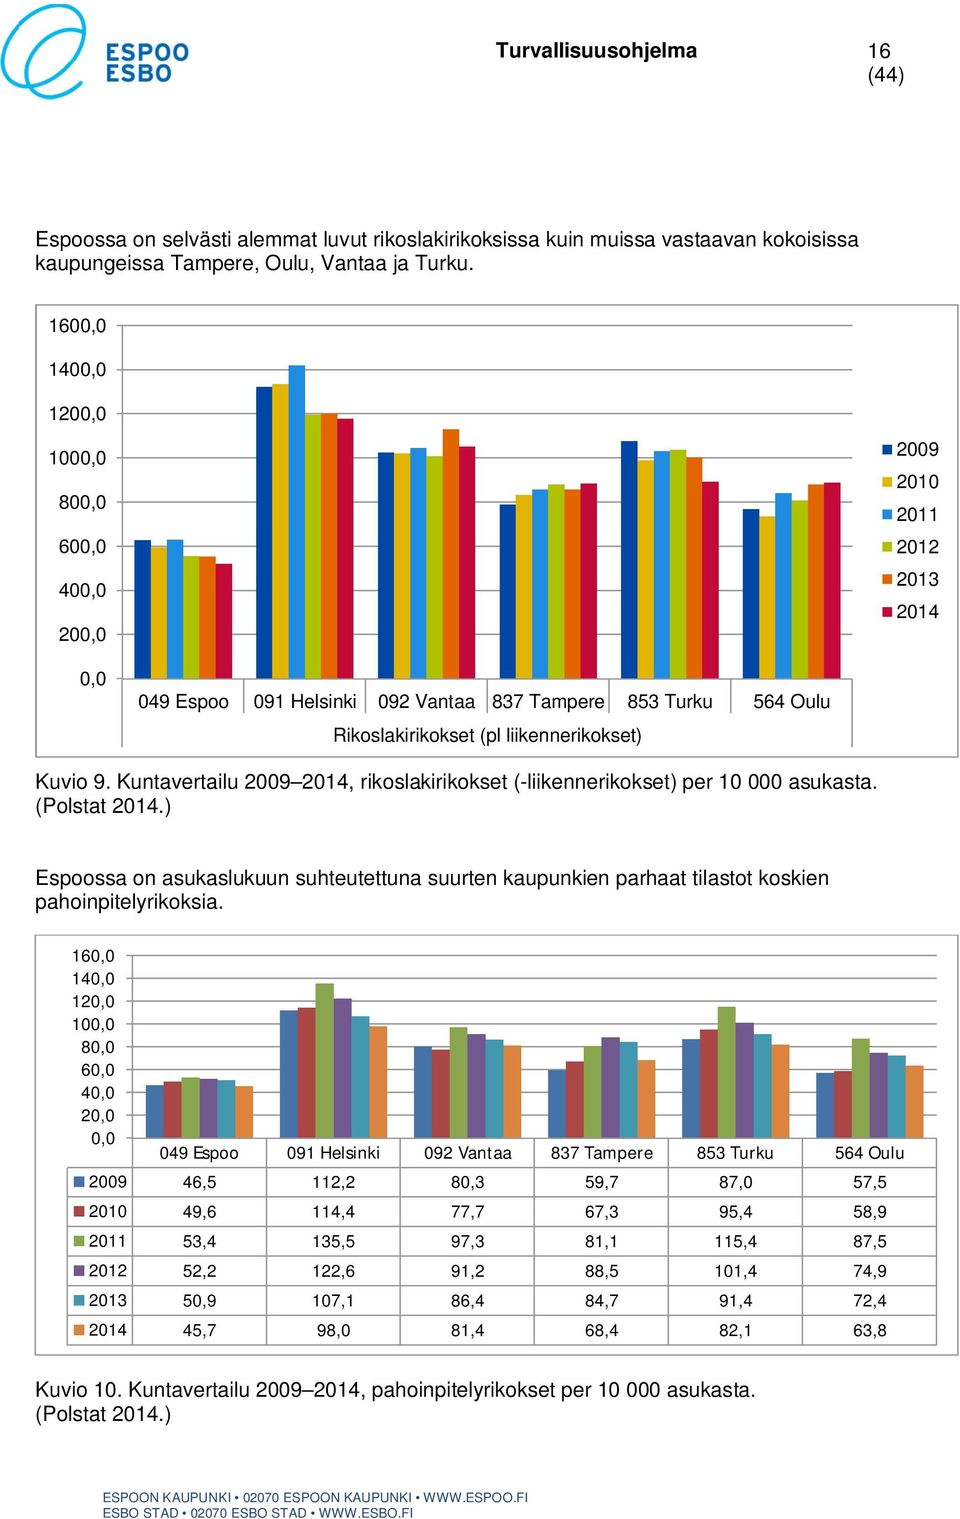 Kuntavertailu 2009 2014, rikoslakirikokset (-liikennerikokset) per 10 000 asukasta. (Polstat 2014.